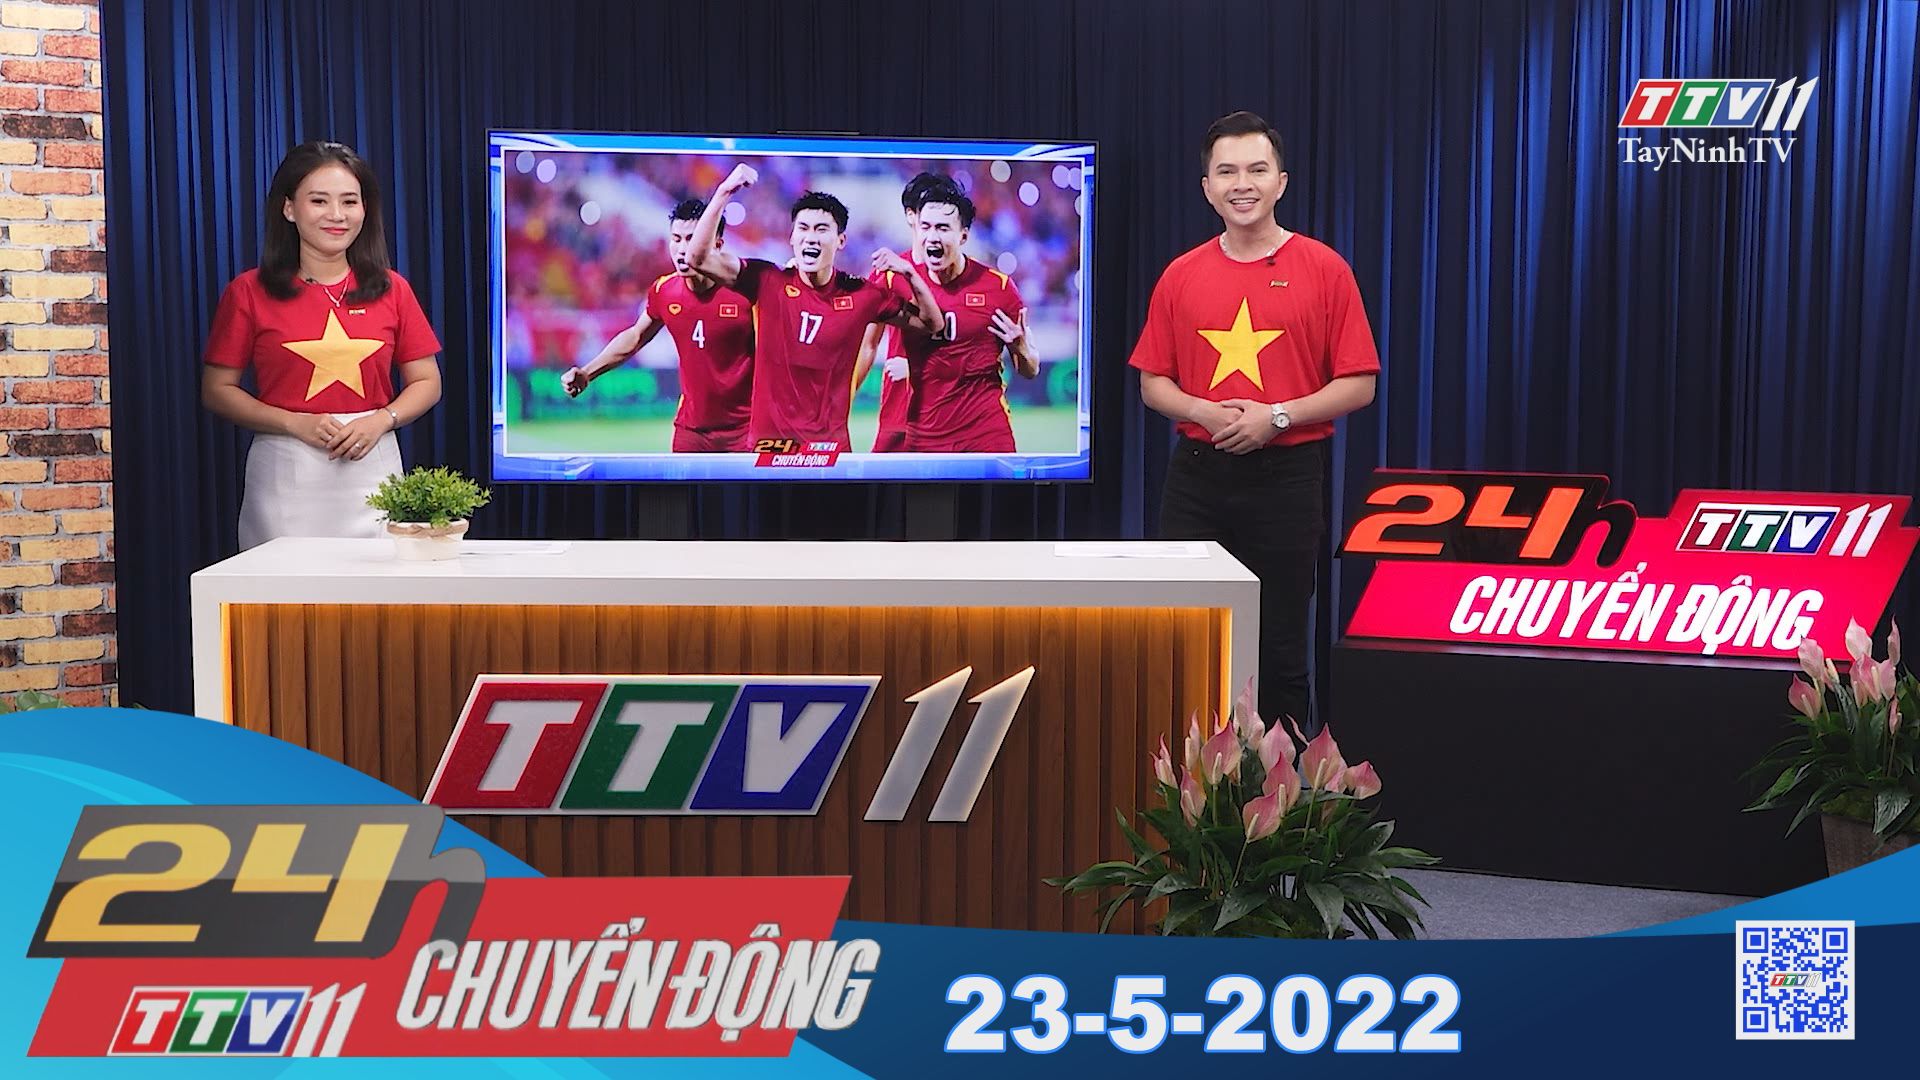 24h Chuyển động 23-5-2022 | Tin tức hôm nay | TayNinhTV